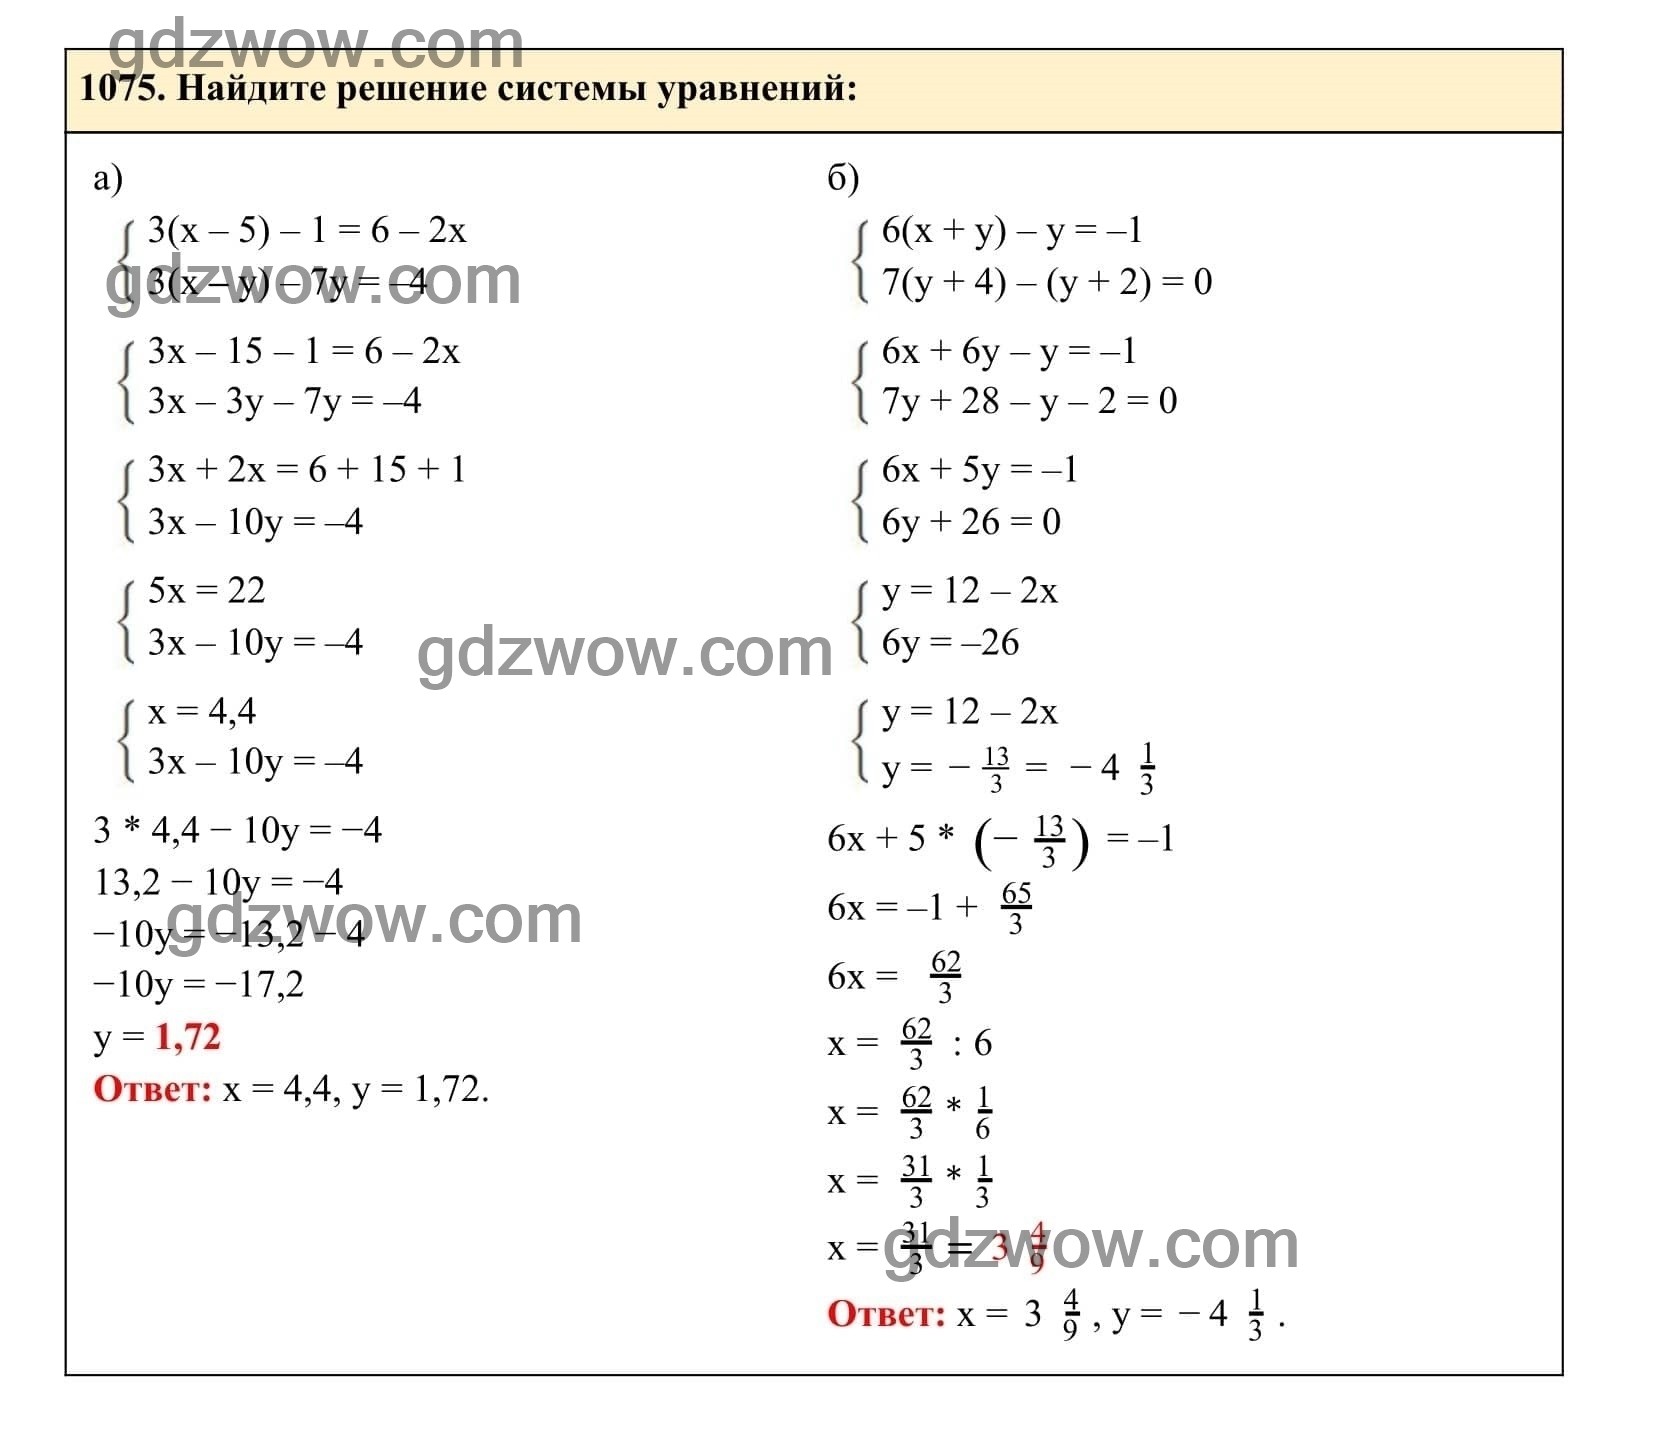 Упражнение 1075 - ГДЗ по Алгебре 7 класс Учебник Макарычев (решебник) - GDZwow